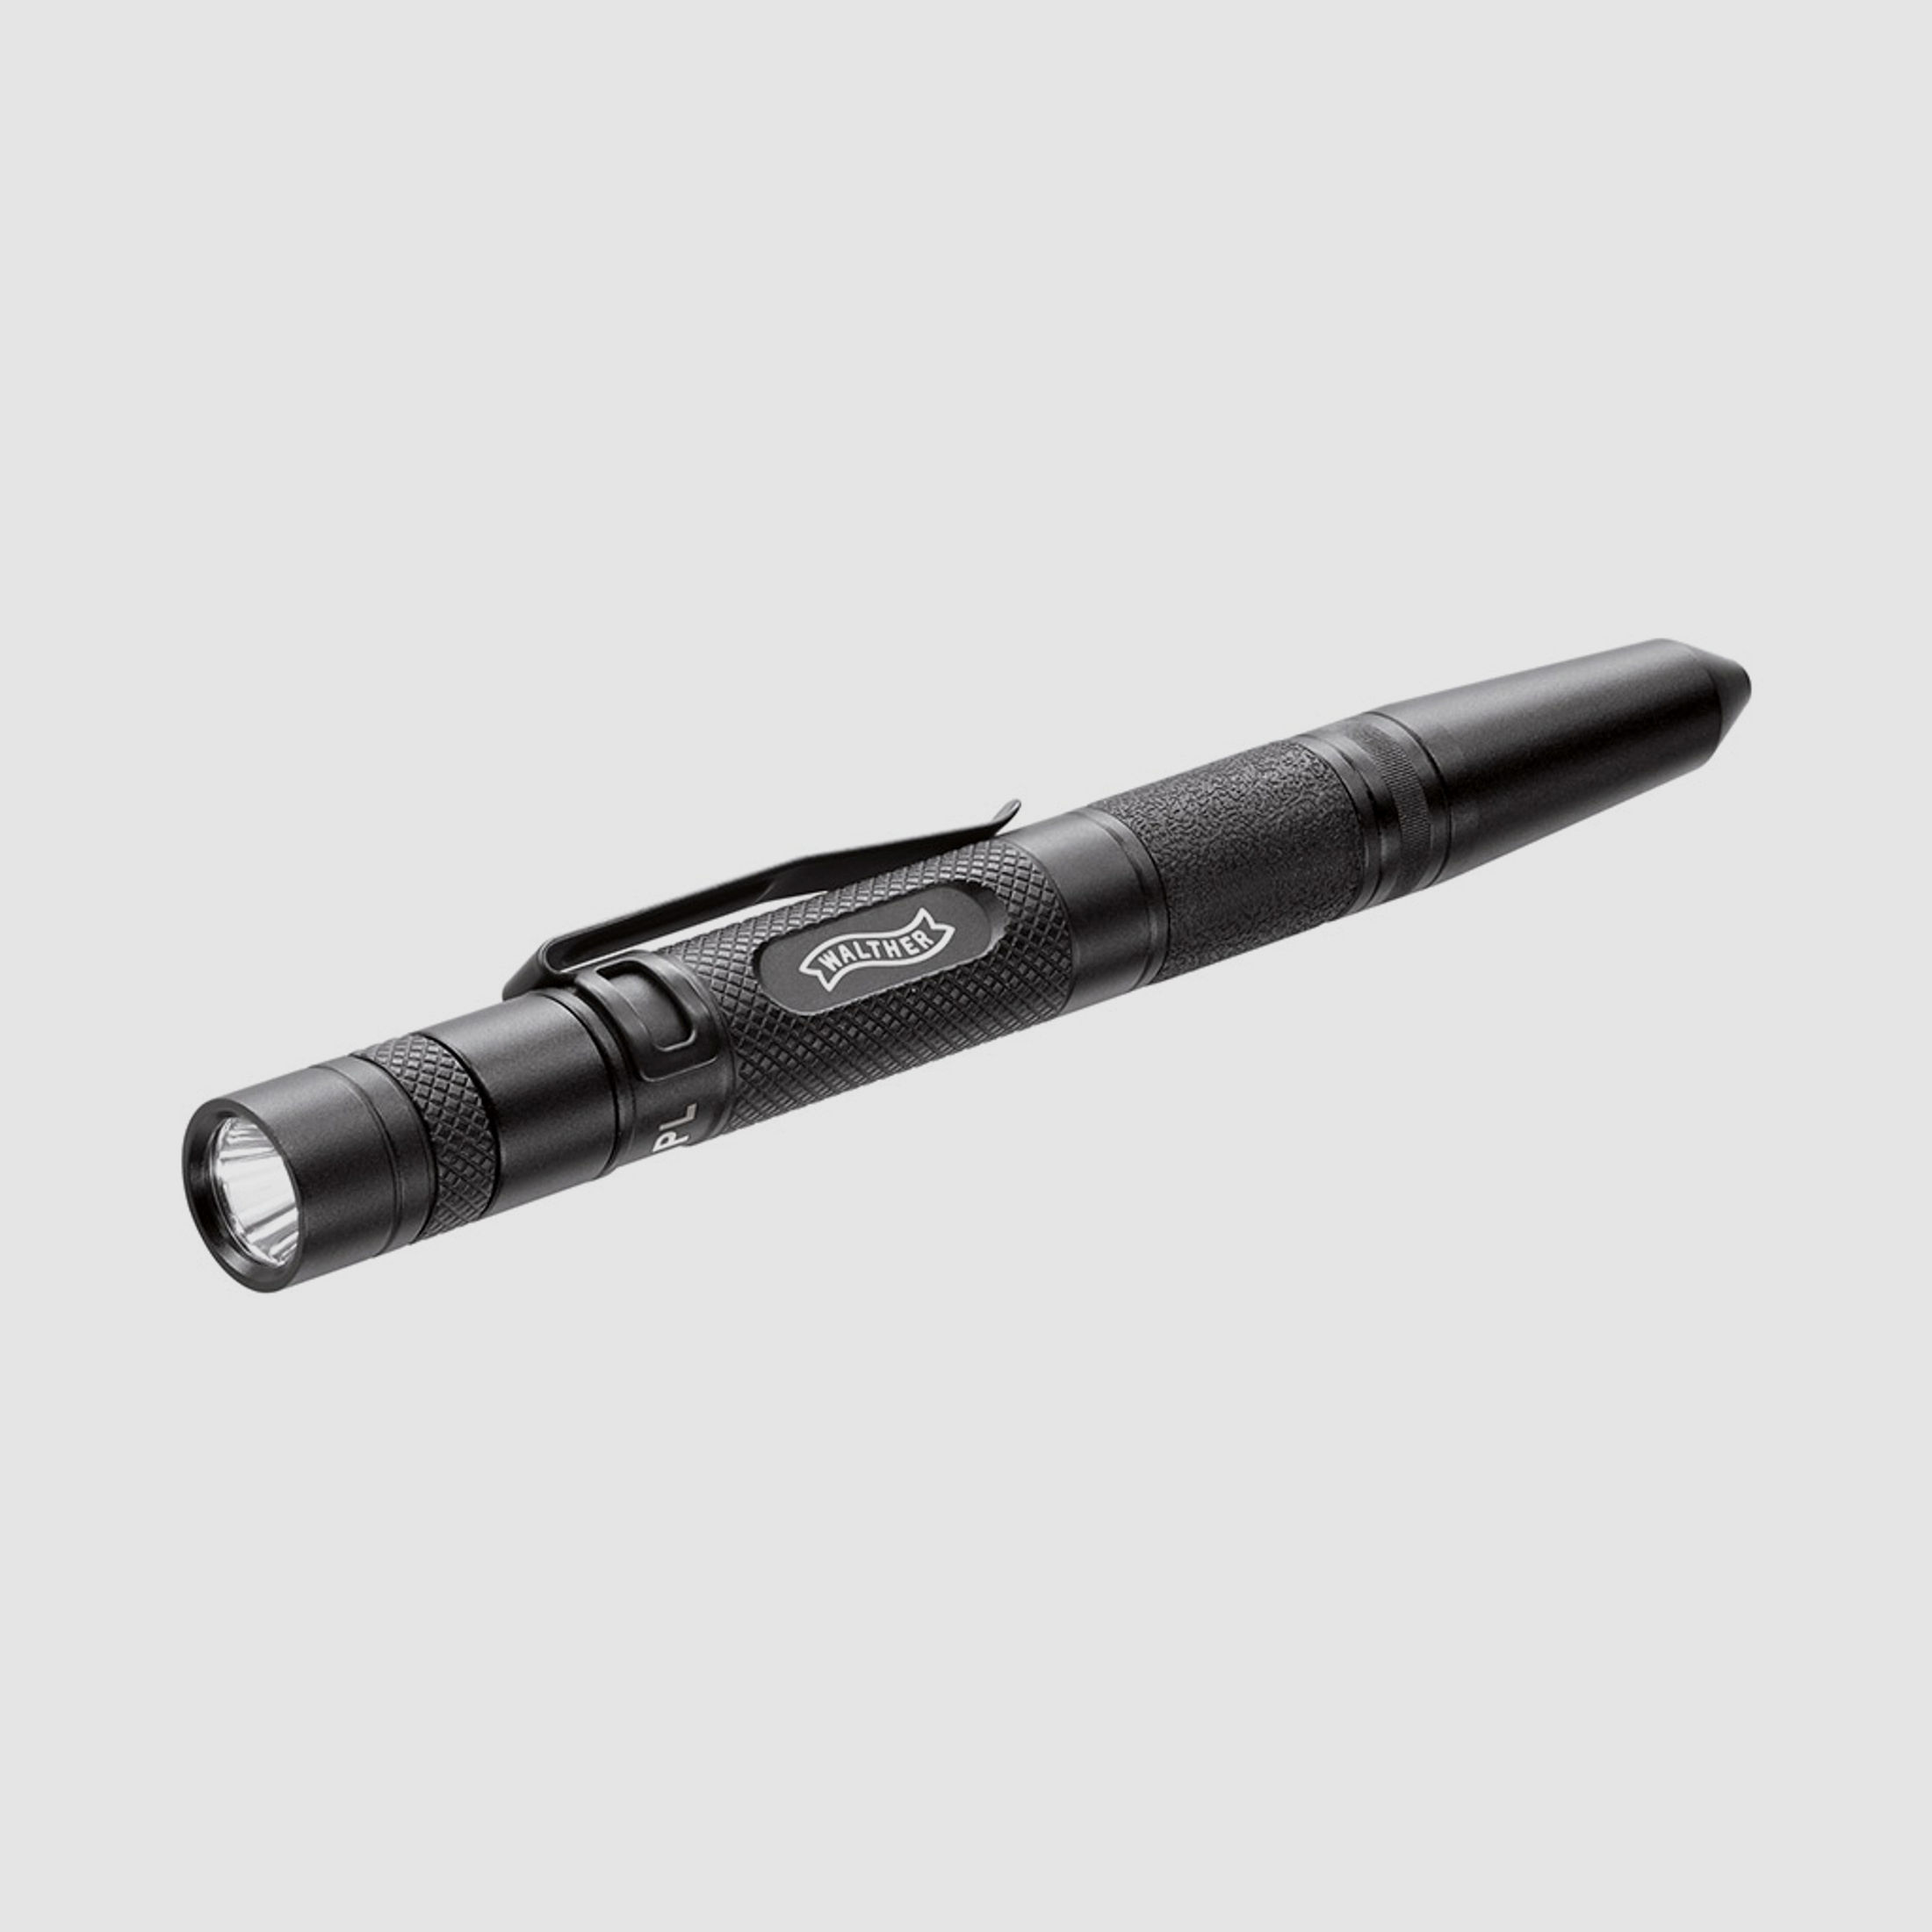 Taschenlampe Kubotan Kugelschreiber Glasbrecher Walther TPL Tactical Pen light schwarz 70 Lumen